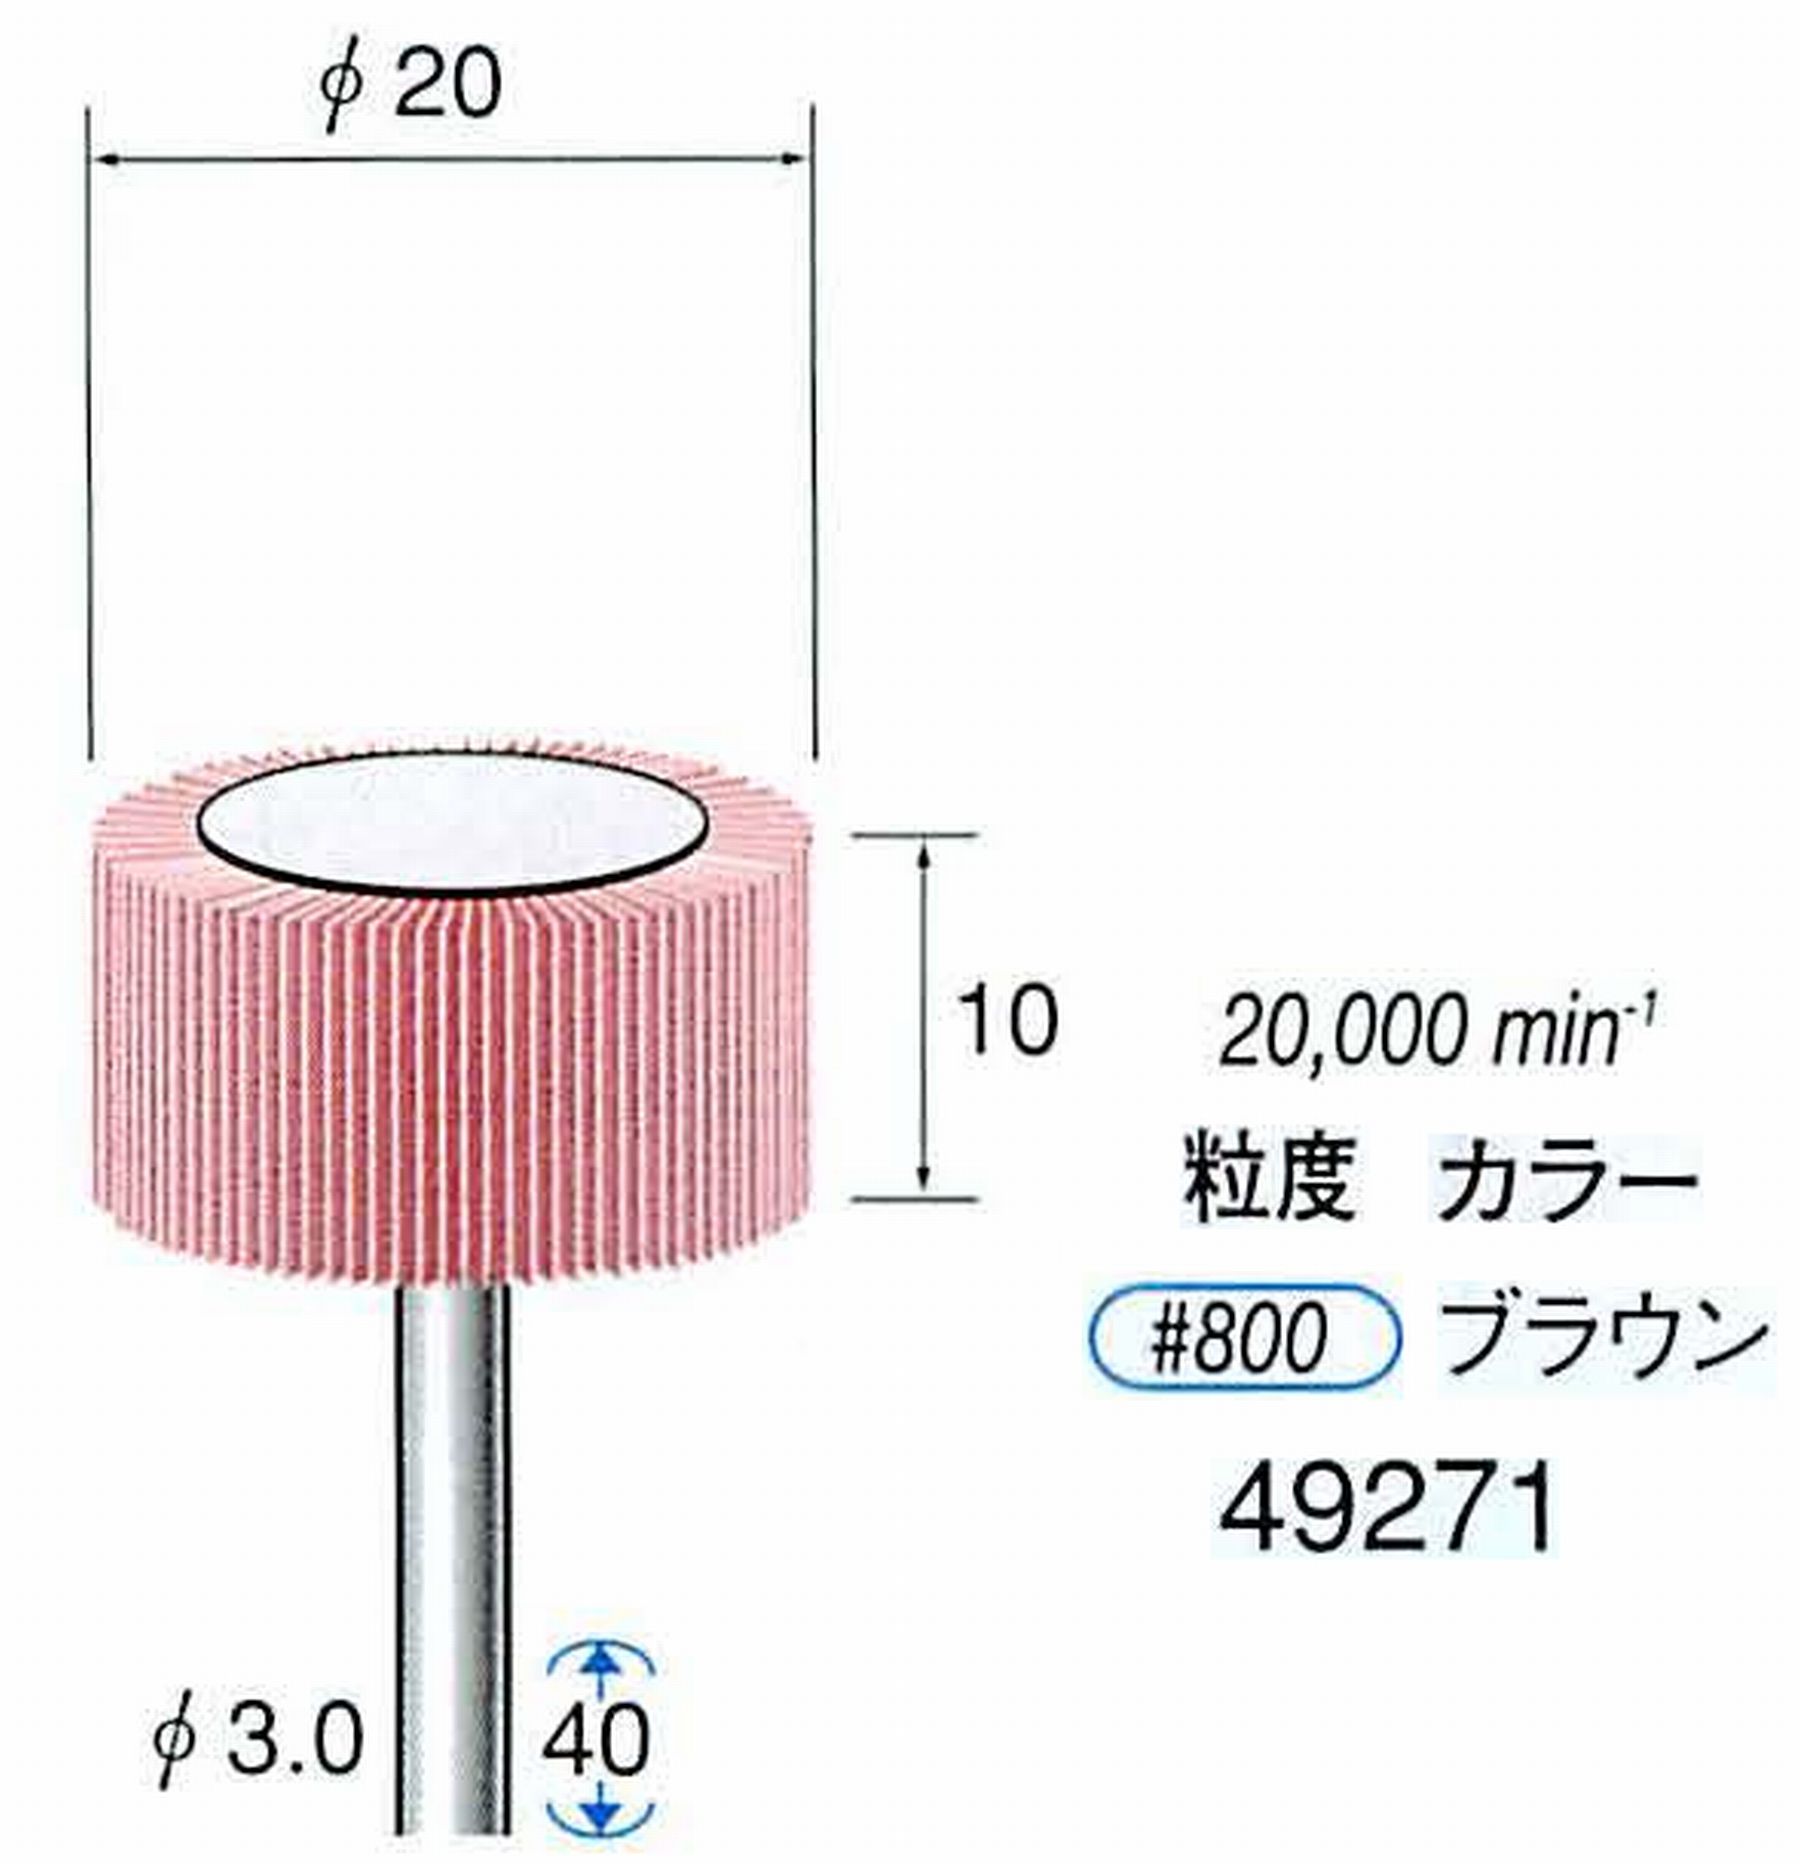 ナカニシ/NAKANISHI ファイン フラップサンダー 軸径(シャンク)φ3.0mm 49271